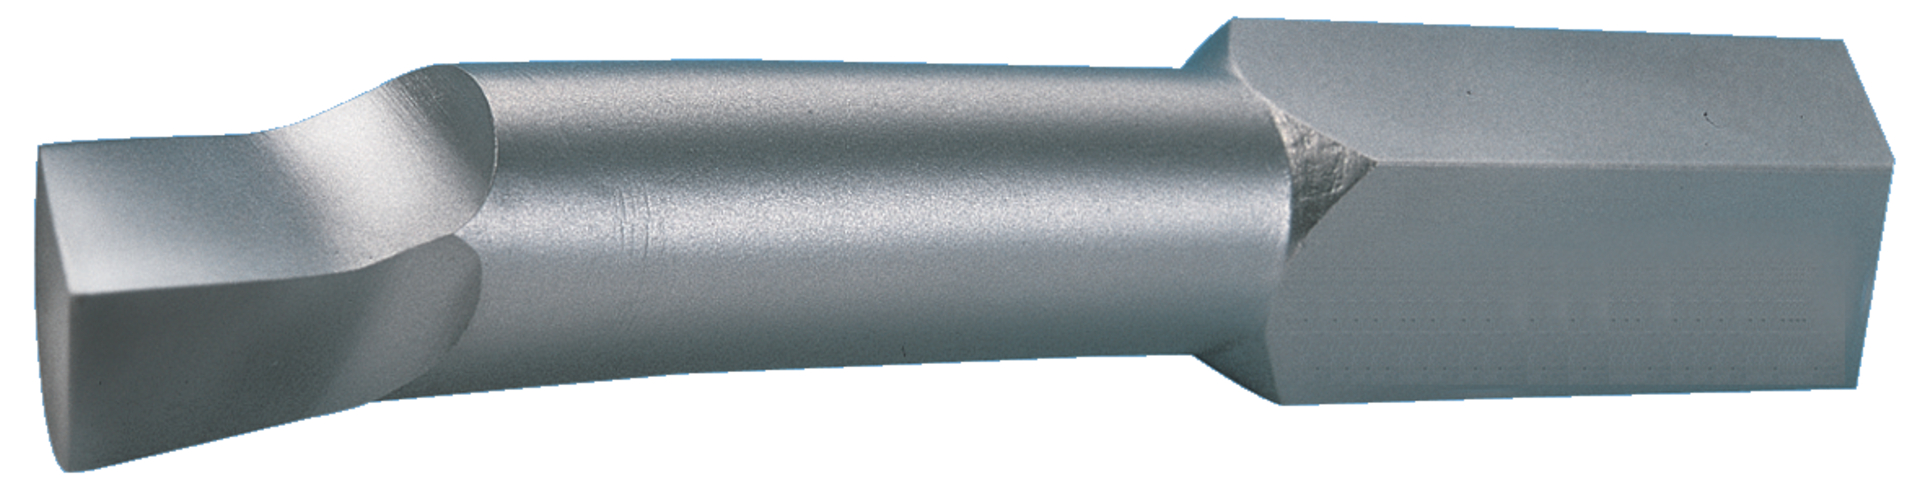 Eckdrehmeissel HSSE D4954-R 16 x 16 x 180 mm FORMAT